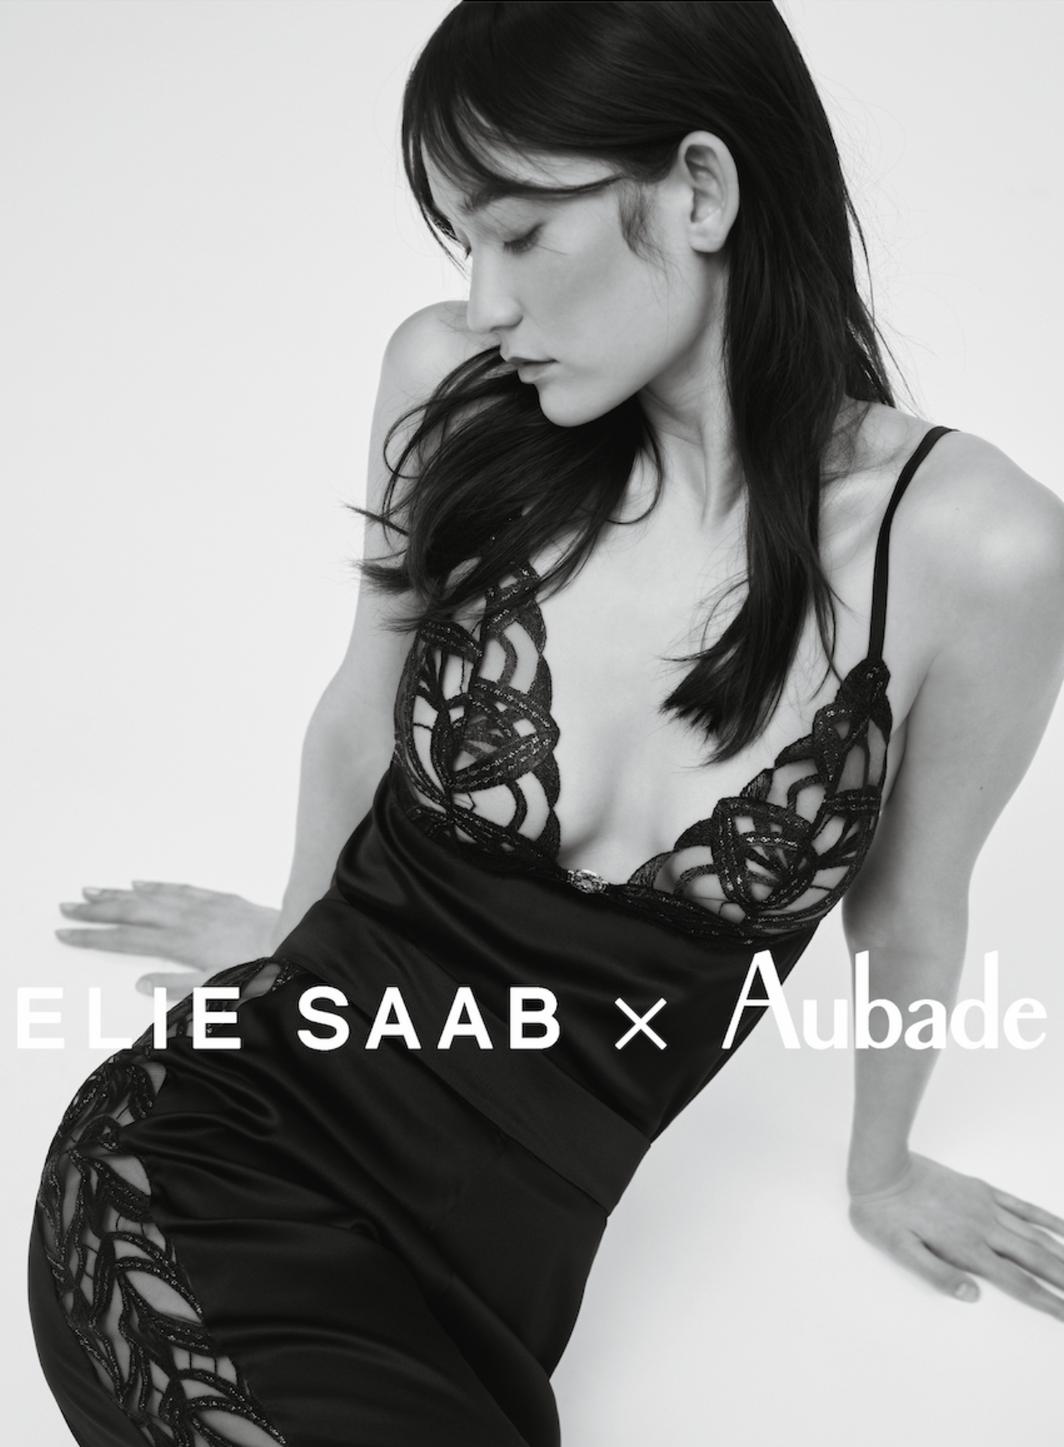 Elie Saab lance sa collection de lingerie avec Aubade.